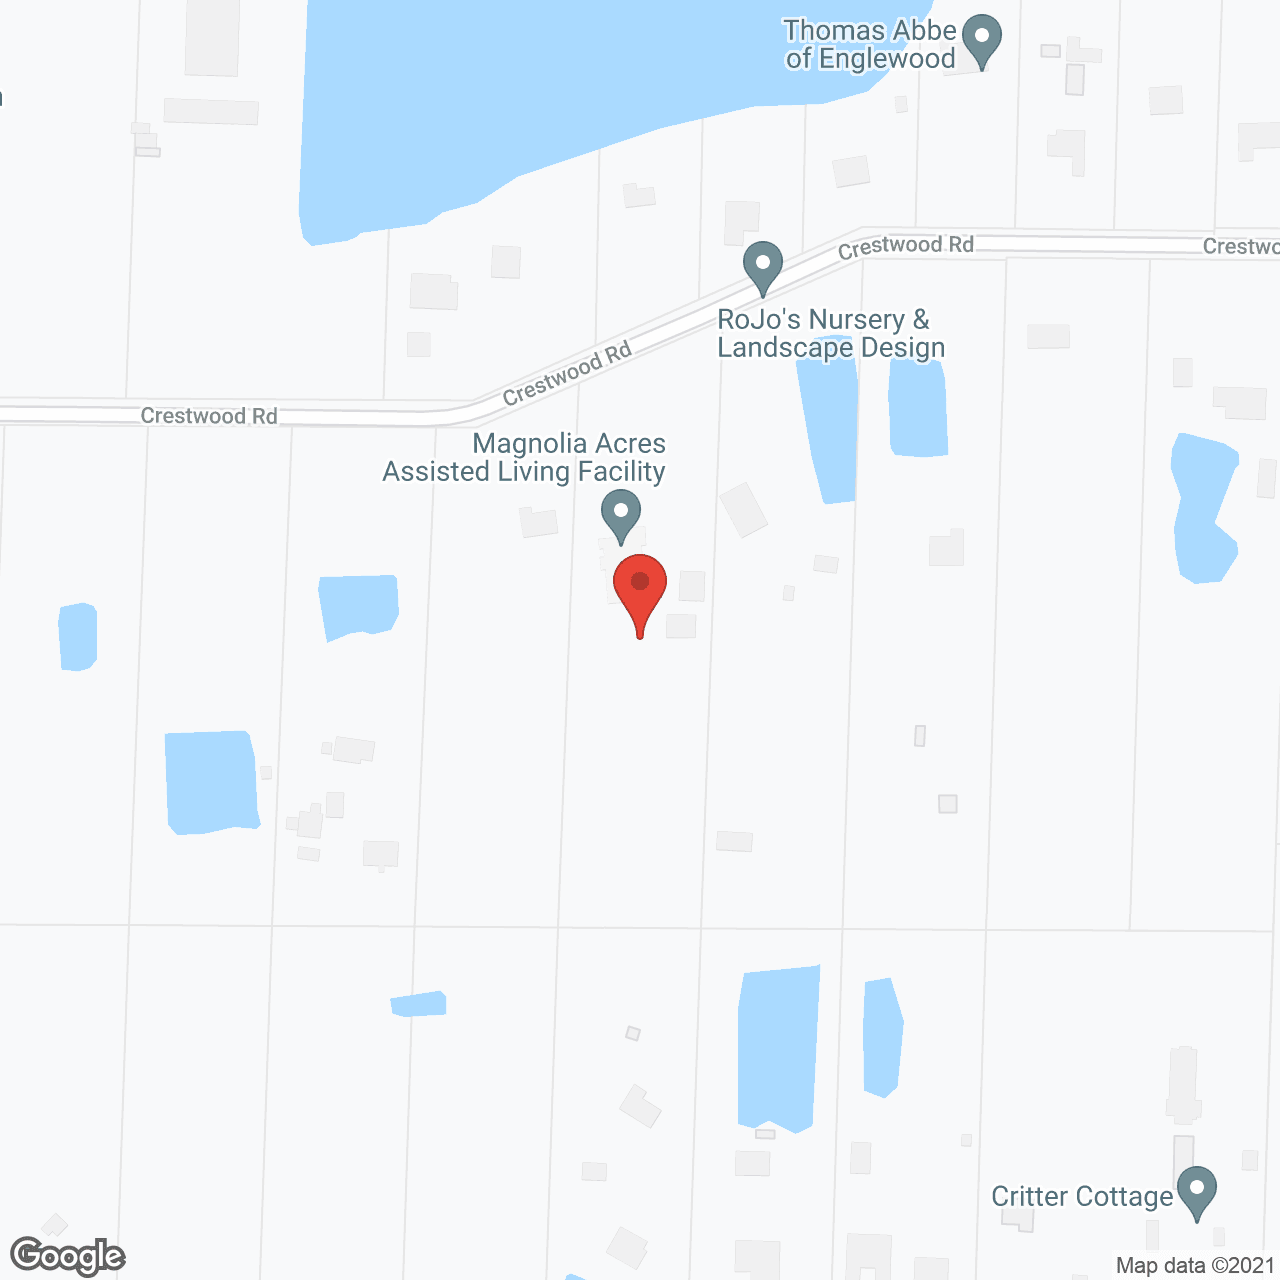 Magnolia Acres ALF in google map